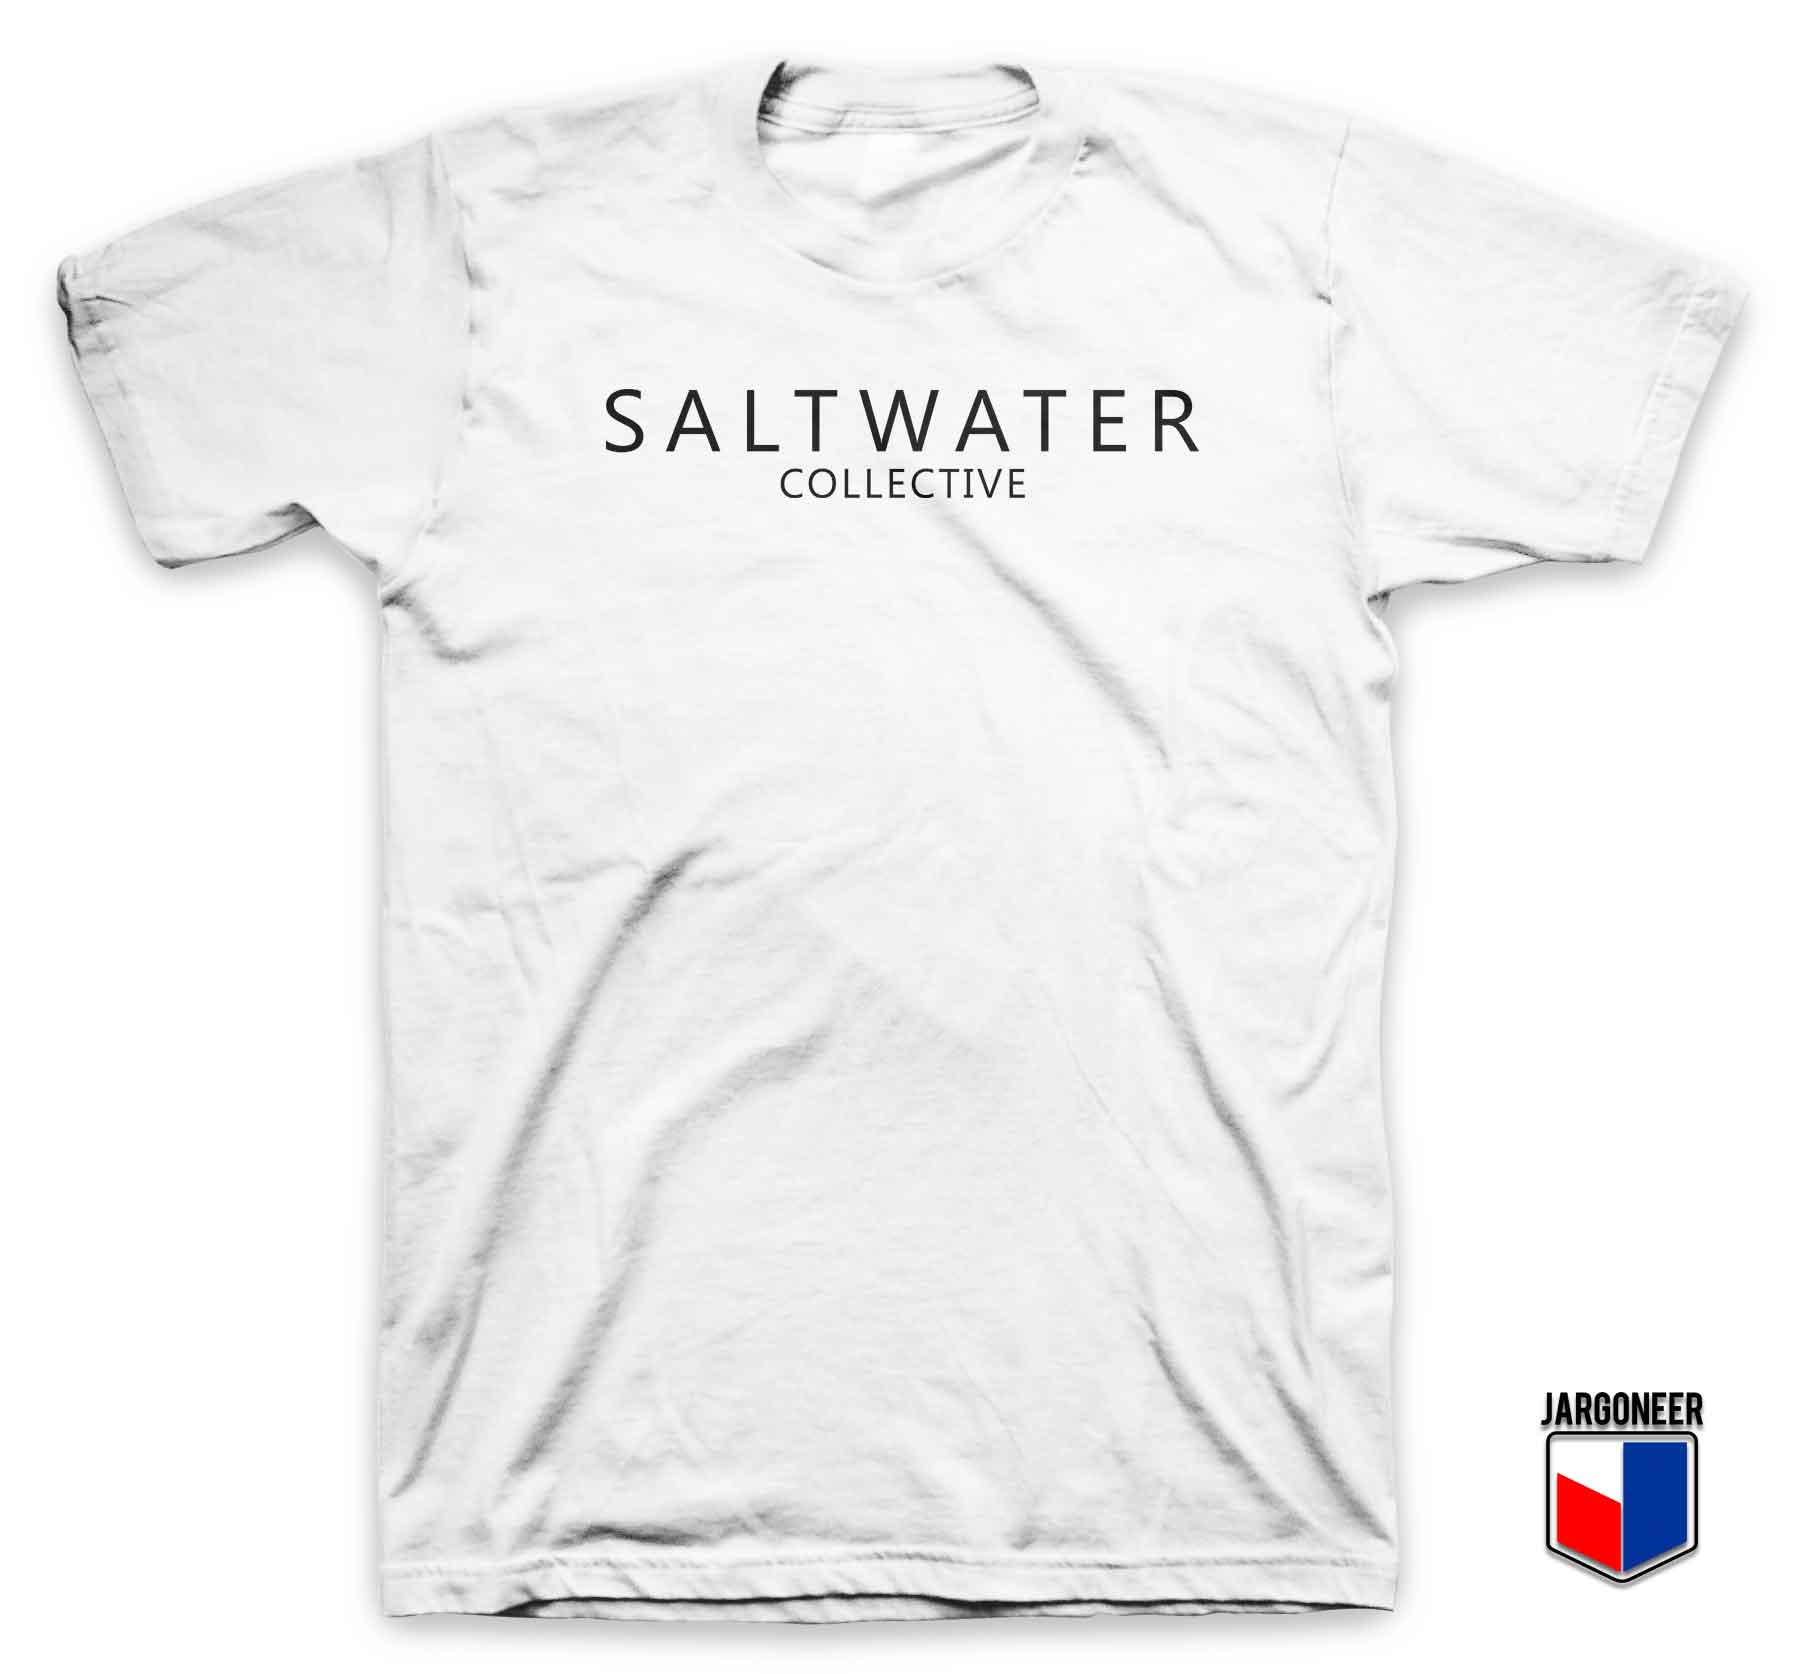 Saltwater Collective 3 - Shop Unique Graphic Cool Shirt Designs